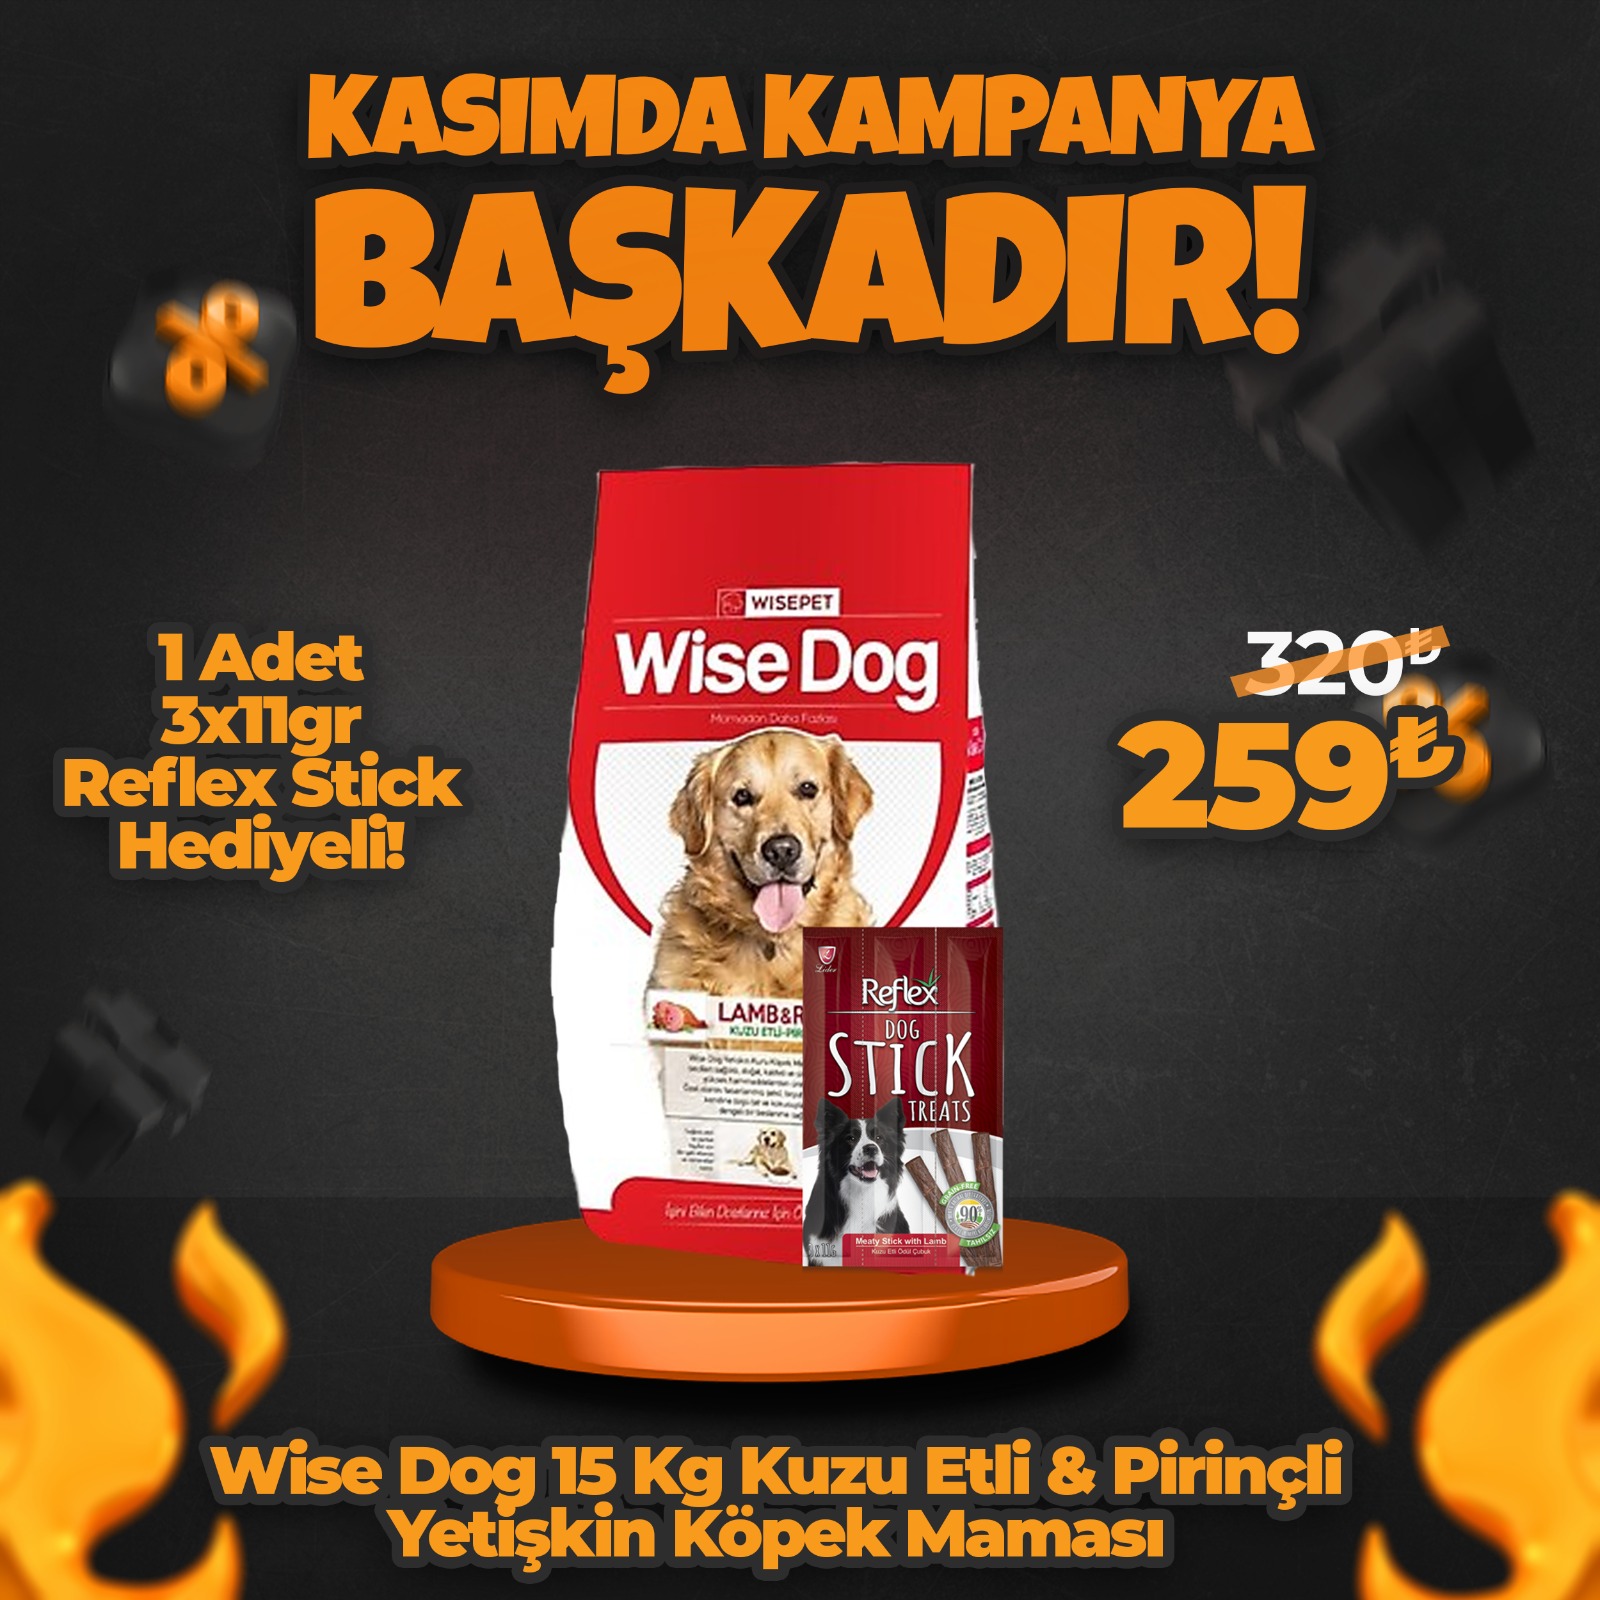 Wise Dog 15 Kg Kuzu Etli Pirinçli Yetişkin Köpek Maması + 1 Adet Reflex Stick Ödül Hediyeli